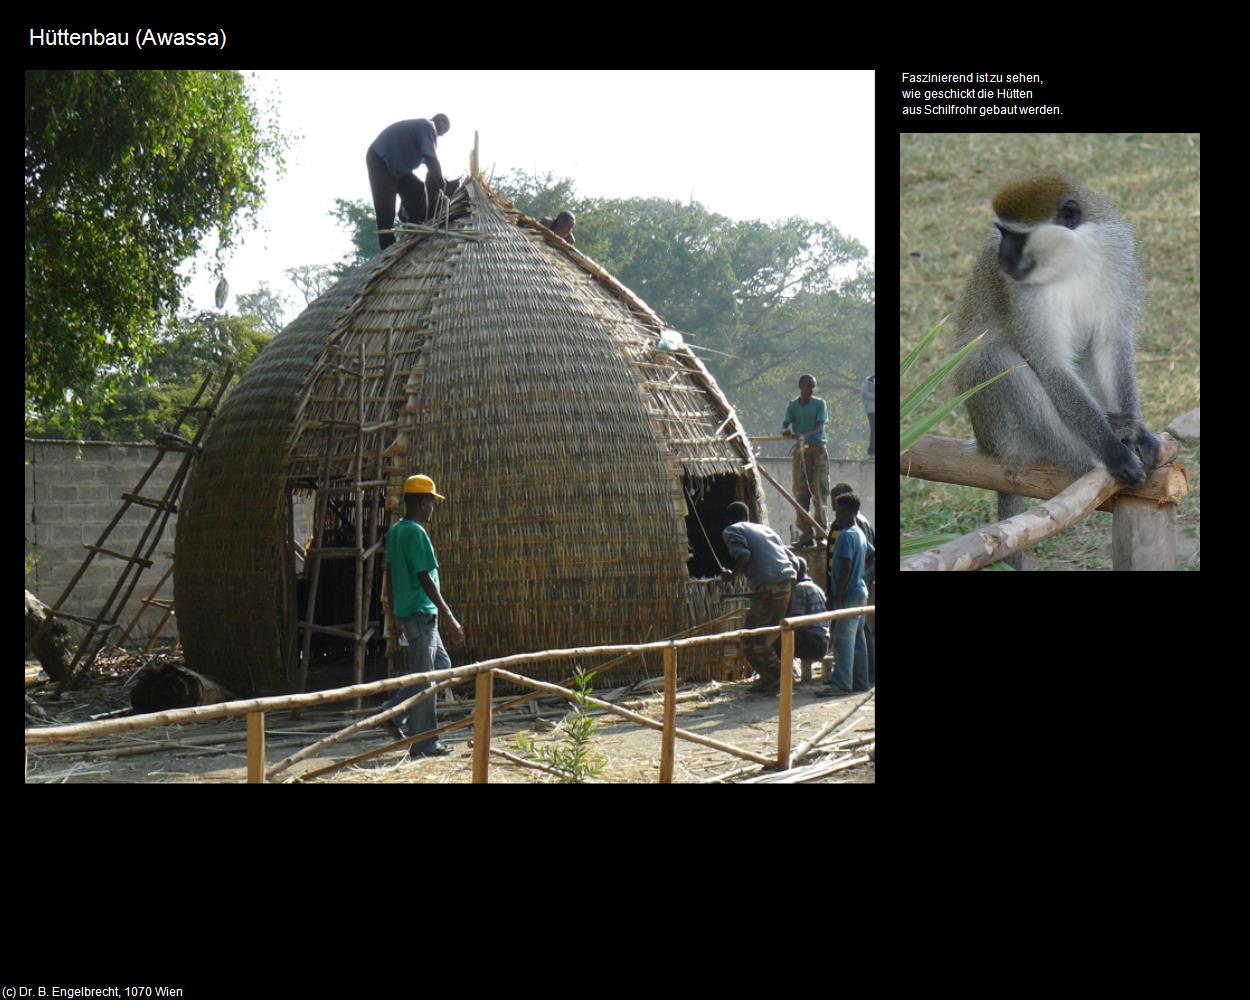 Hüttenbau (Awassa) in Äthiopien